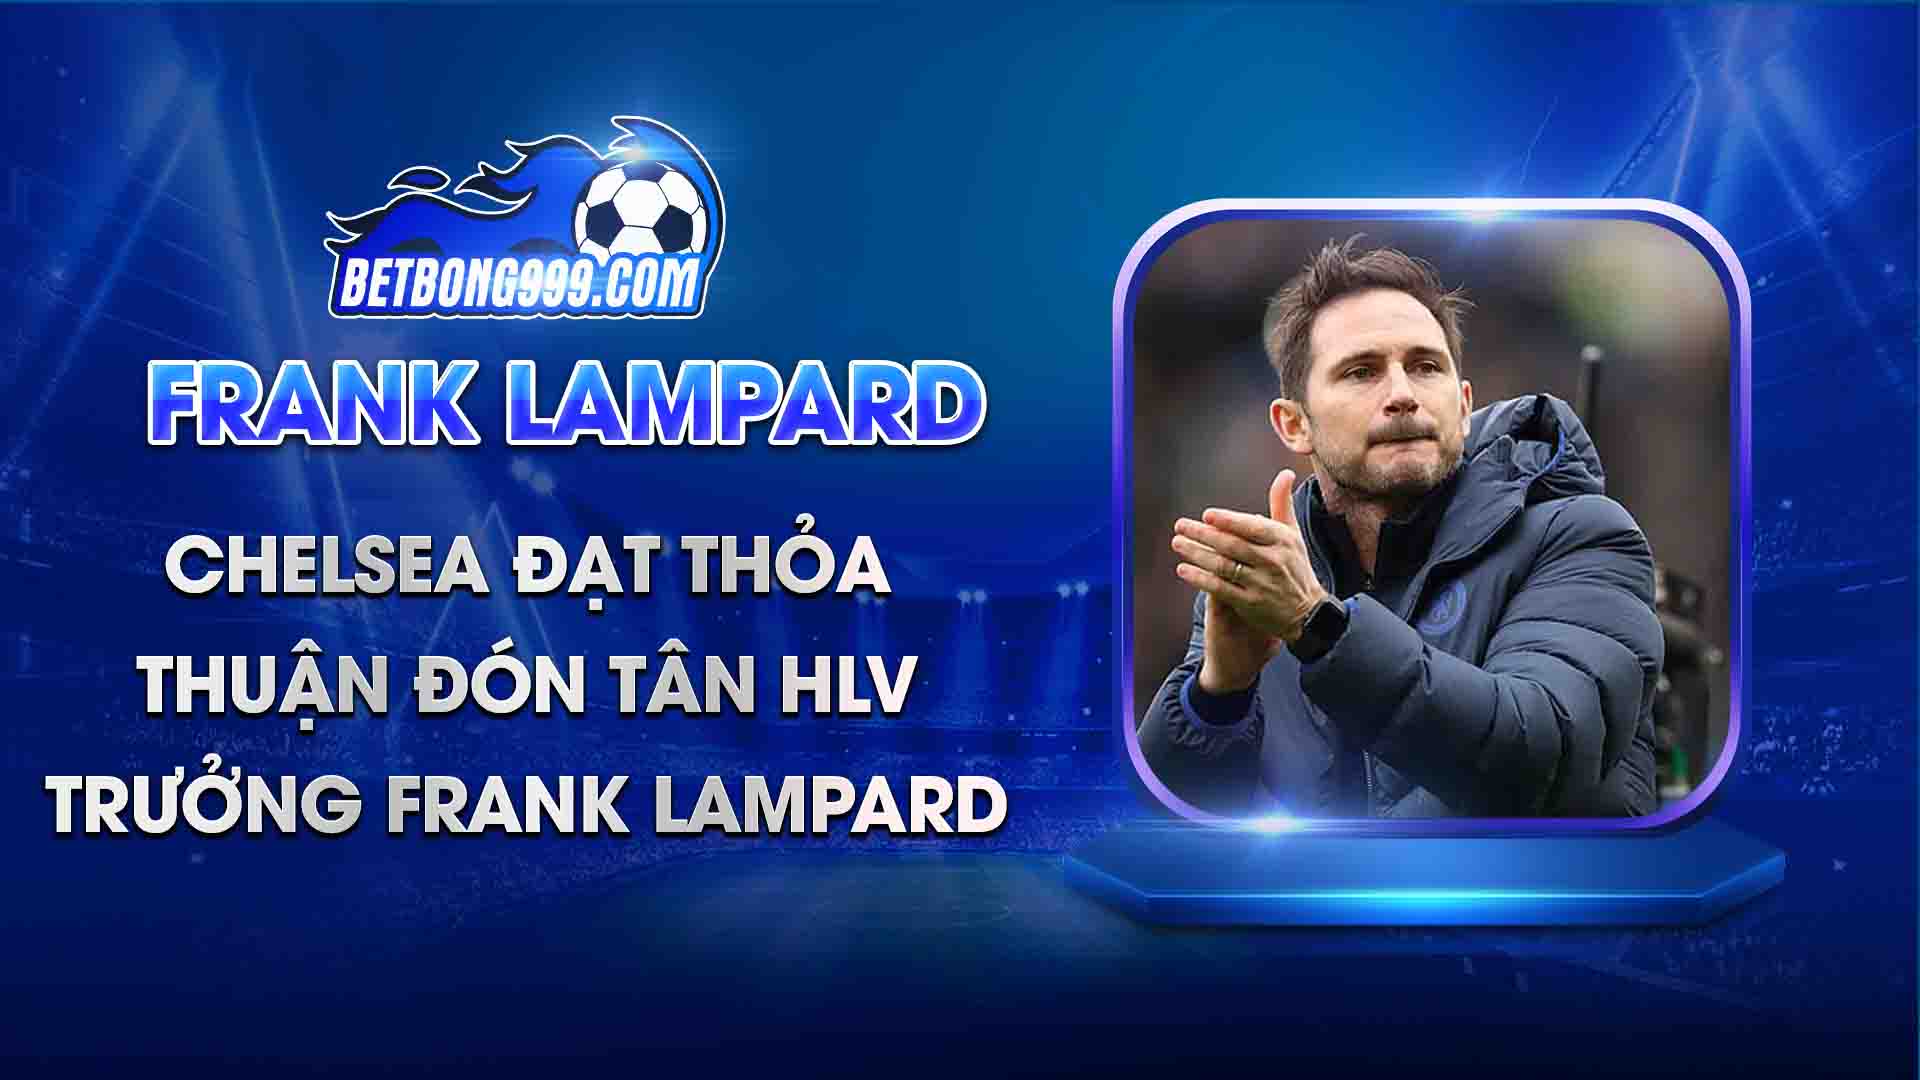 Chelsea đạt thỏa thuận đón tân HLV trưởng Frank Lampard